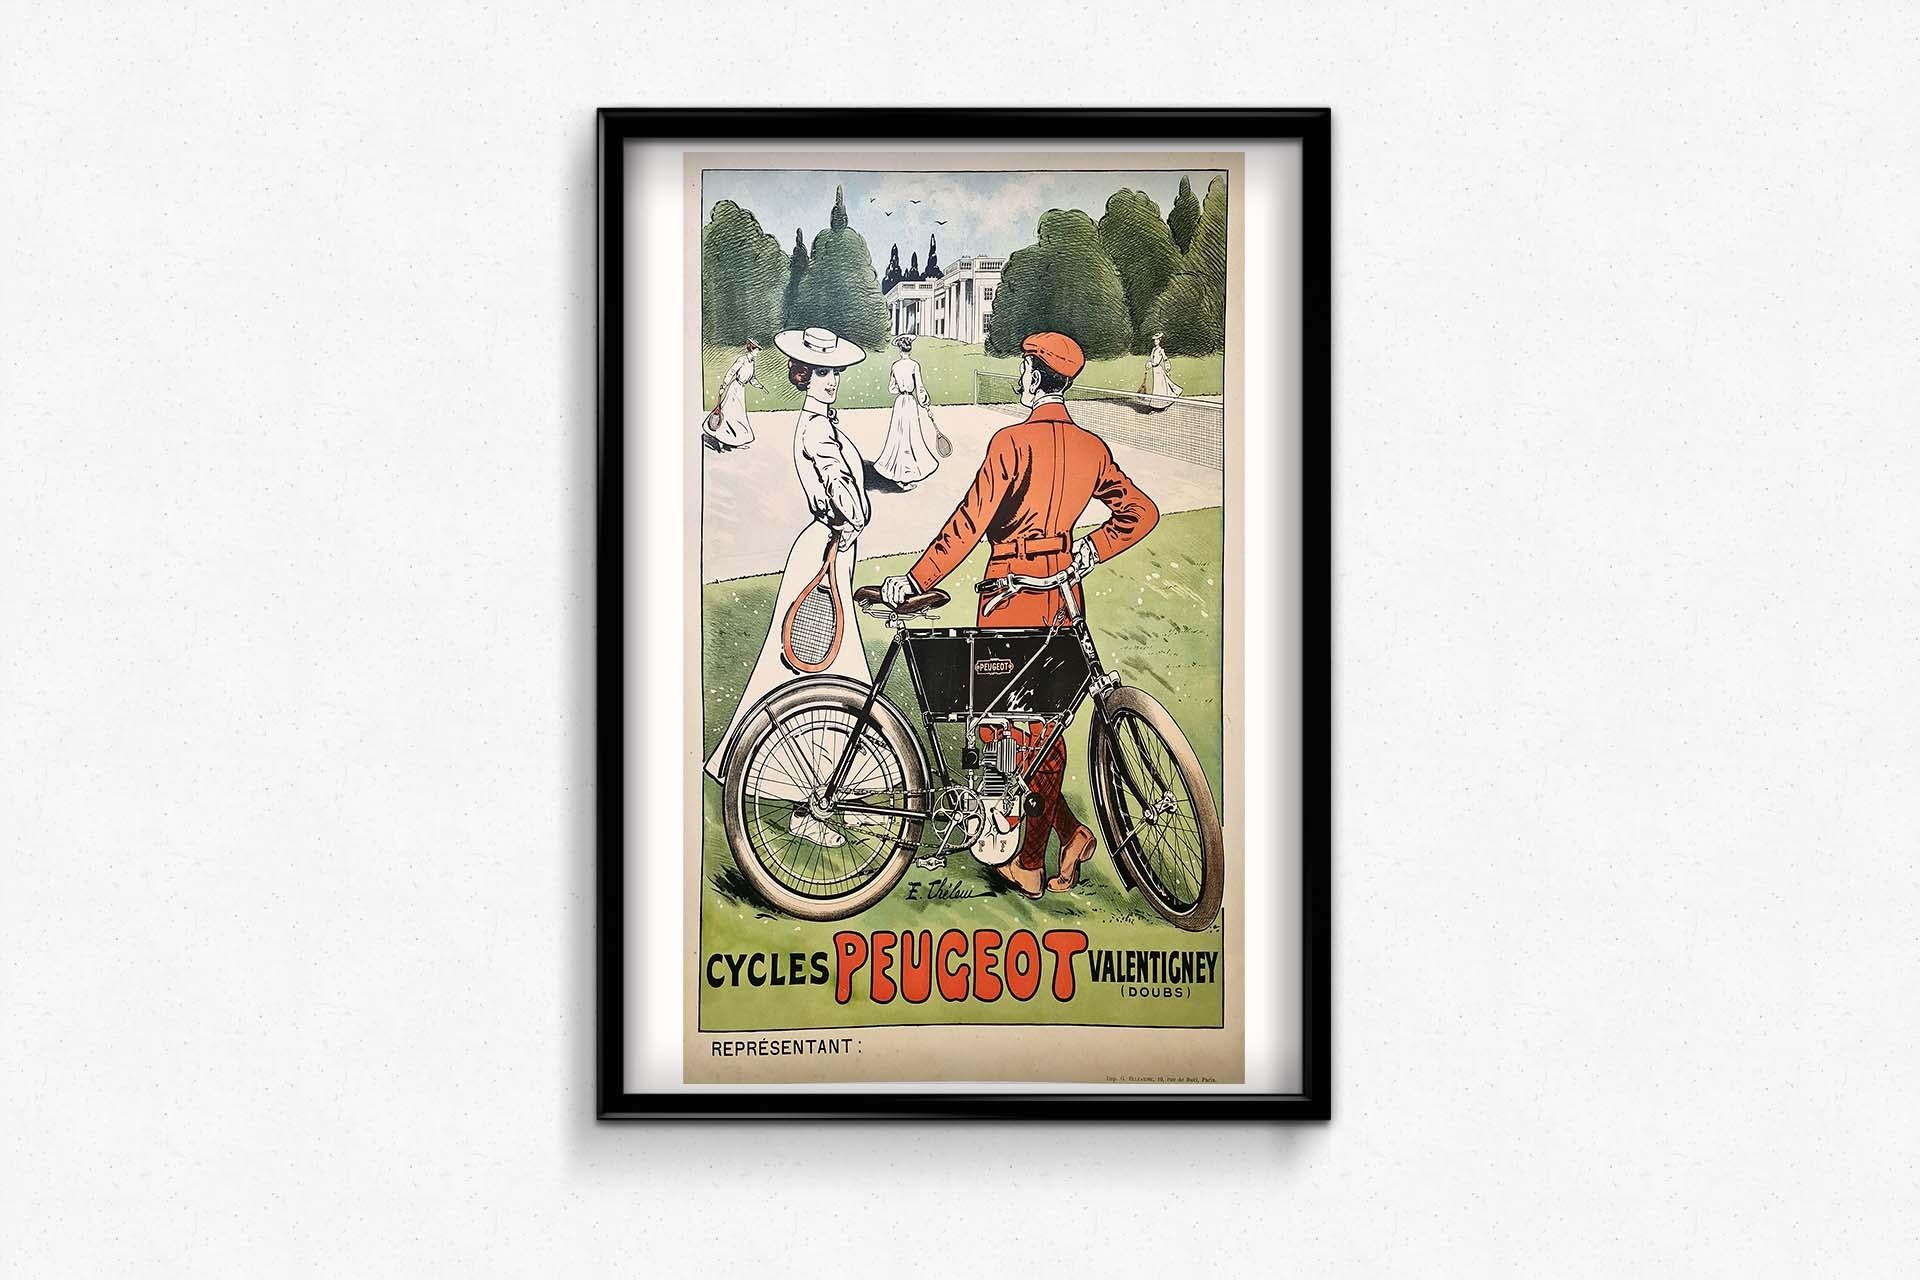 Sehr schönes Plakat von Thelem (Ernest BARTHÉLEMY LEM, 1869-1930) für die Peugeot-Fahrräder.

Der Aufstieg der Familie Peugeot zur Industriemacht begann mit der Entdeckung von Eisen im Doubs-Tal in Ostfrankreich. Zunächst produzierte sie Werkzeuge.